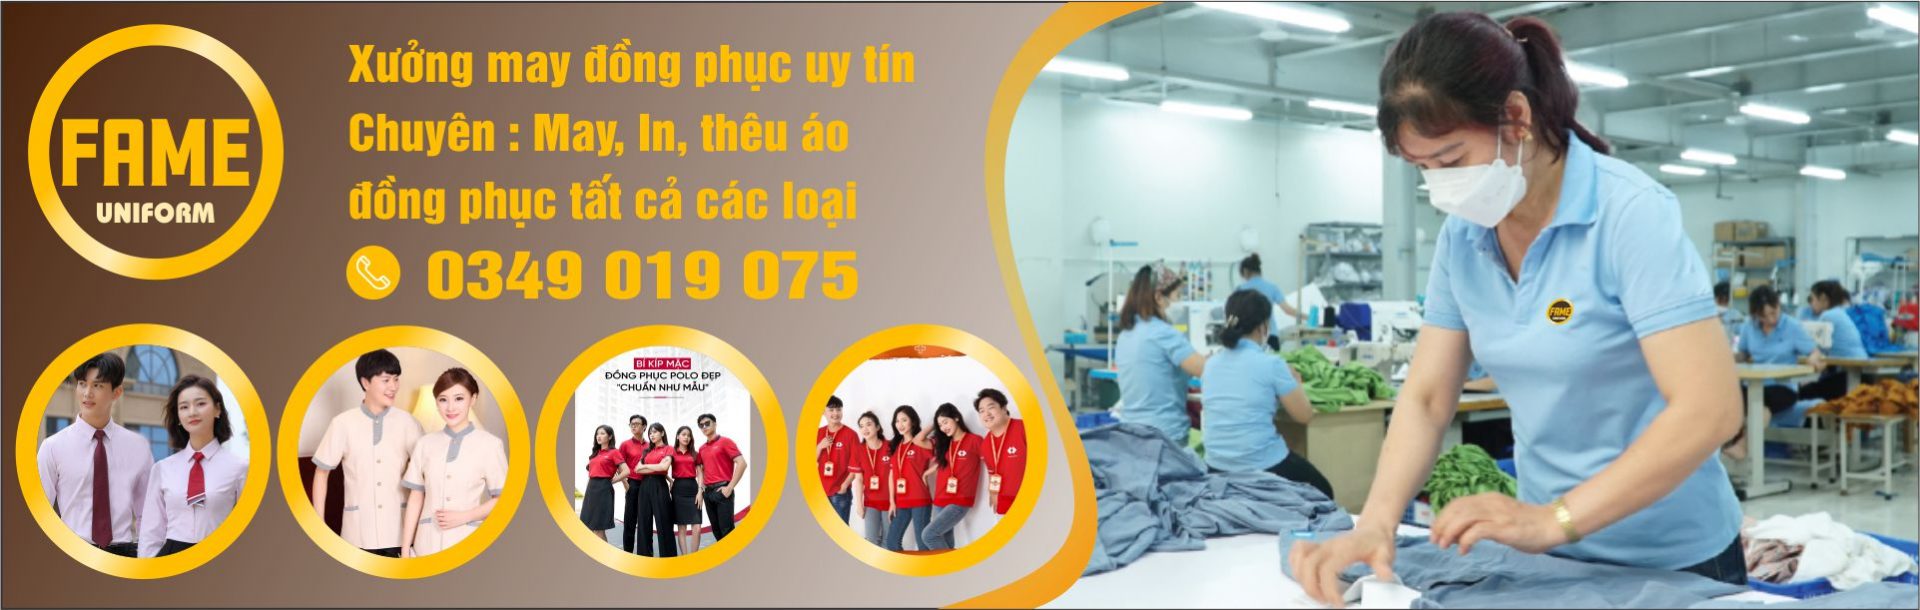 Xưởng may đồng phục bảo hộ lao động giá rẻ tại Đà Nẵng